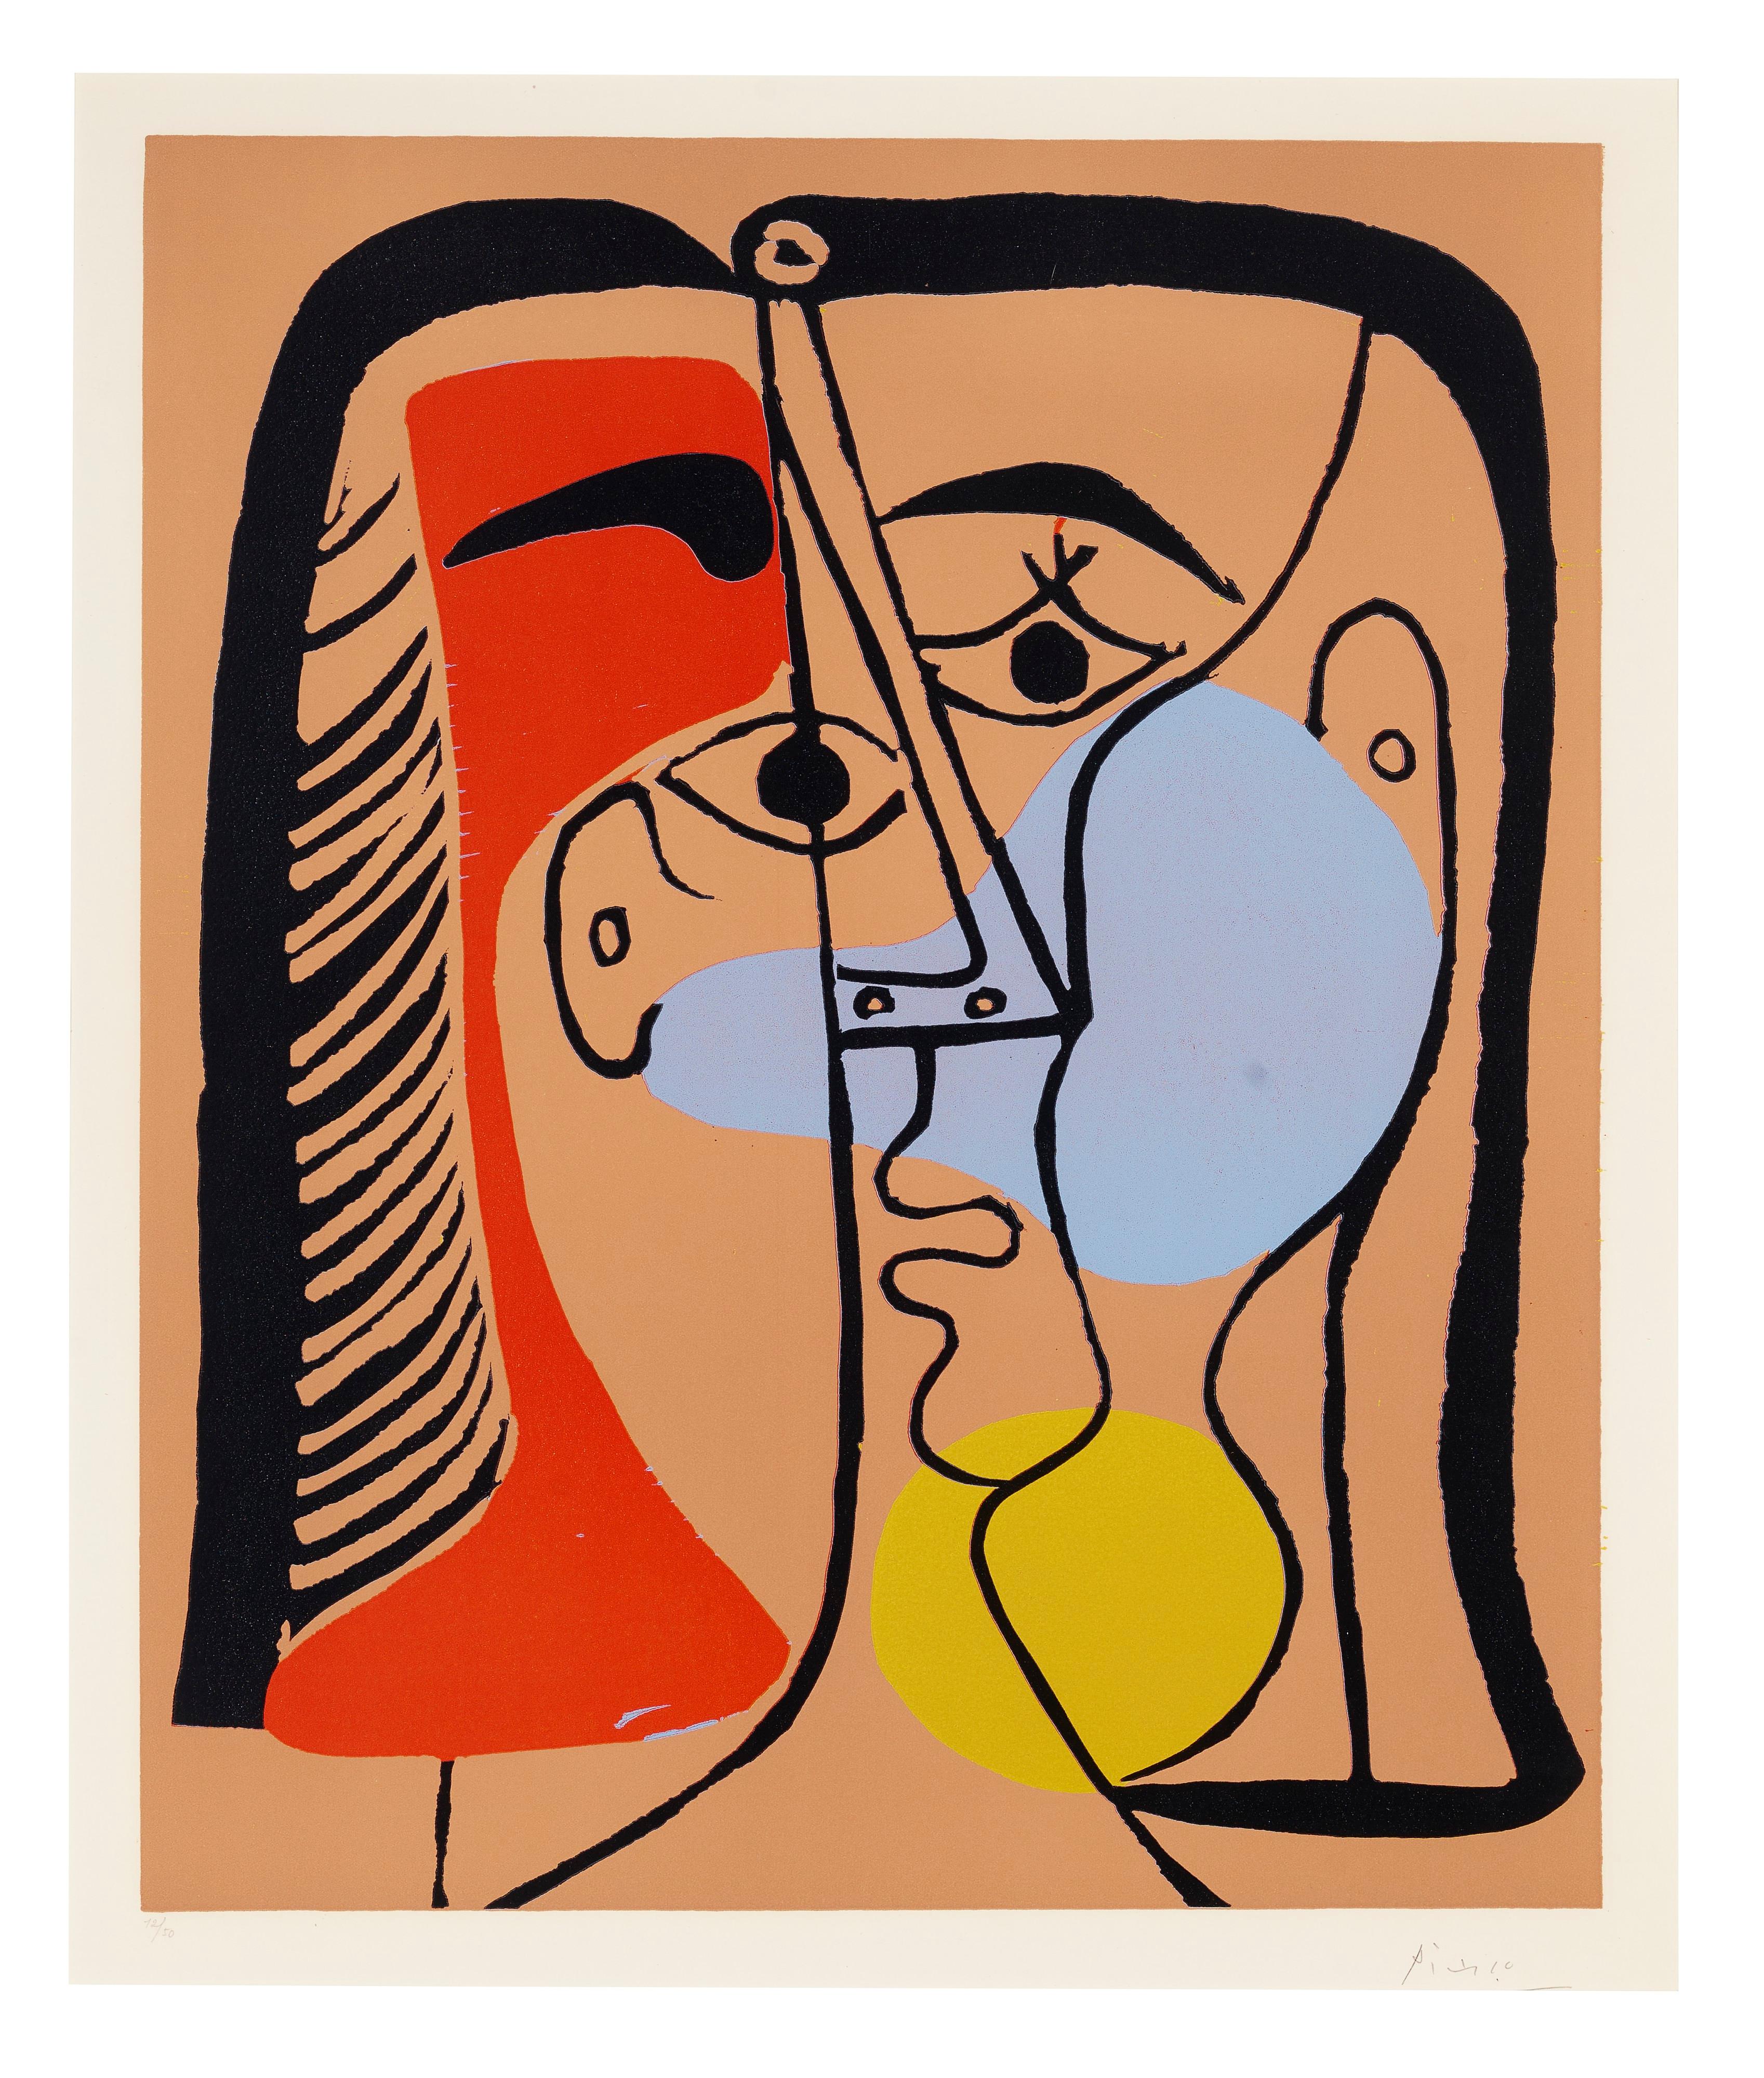 PABLO PICASSO (1881-1973)
Grand Tête (Portrait de Jacqueline aux Cheveux lisses)
linolschnitt in Farben, auf Arches-Papier, 1962, 
mit Bleistift signiert, nummeriert 12/50,
vollrandig, blasse Passepartoutflecken, sonst gut erhalten, gerahmt. 
Bloch